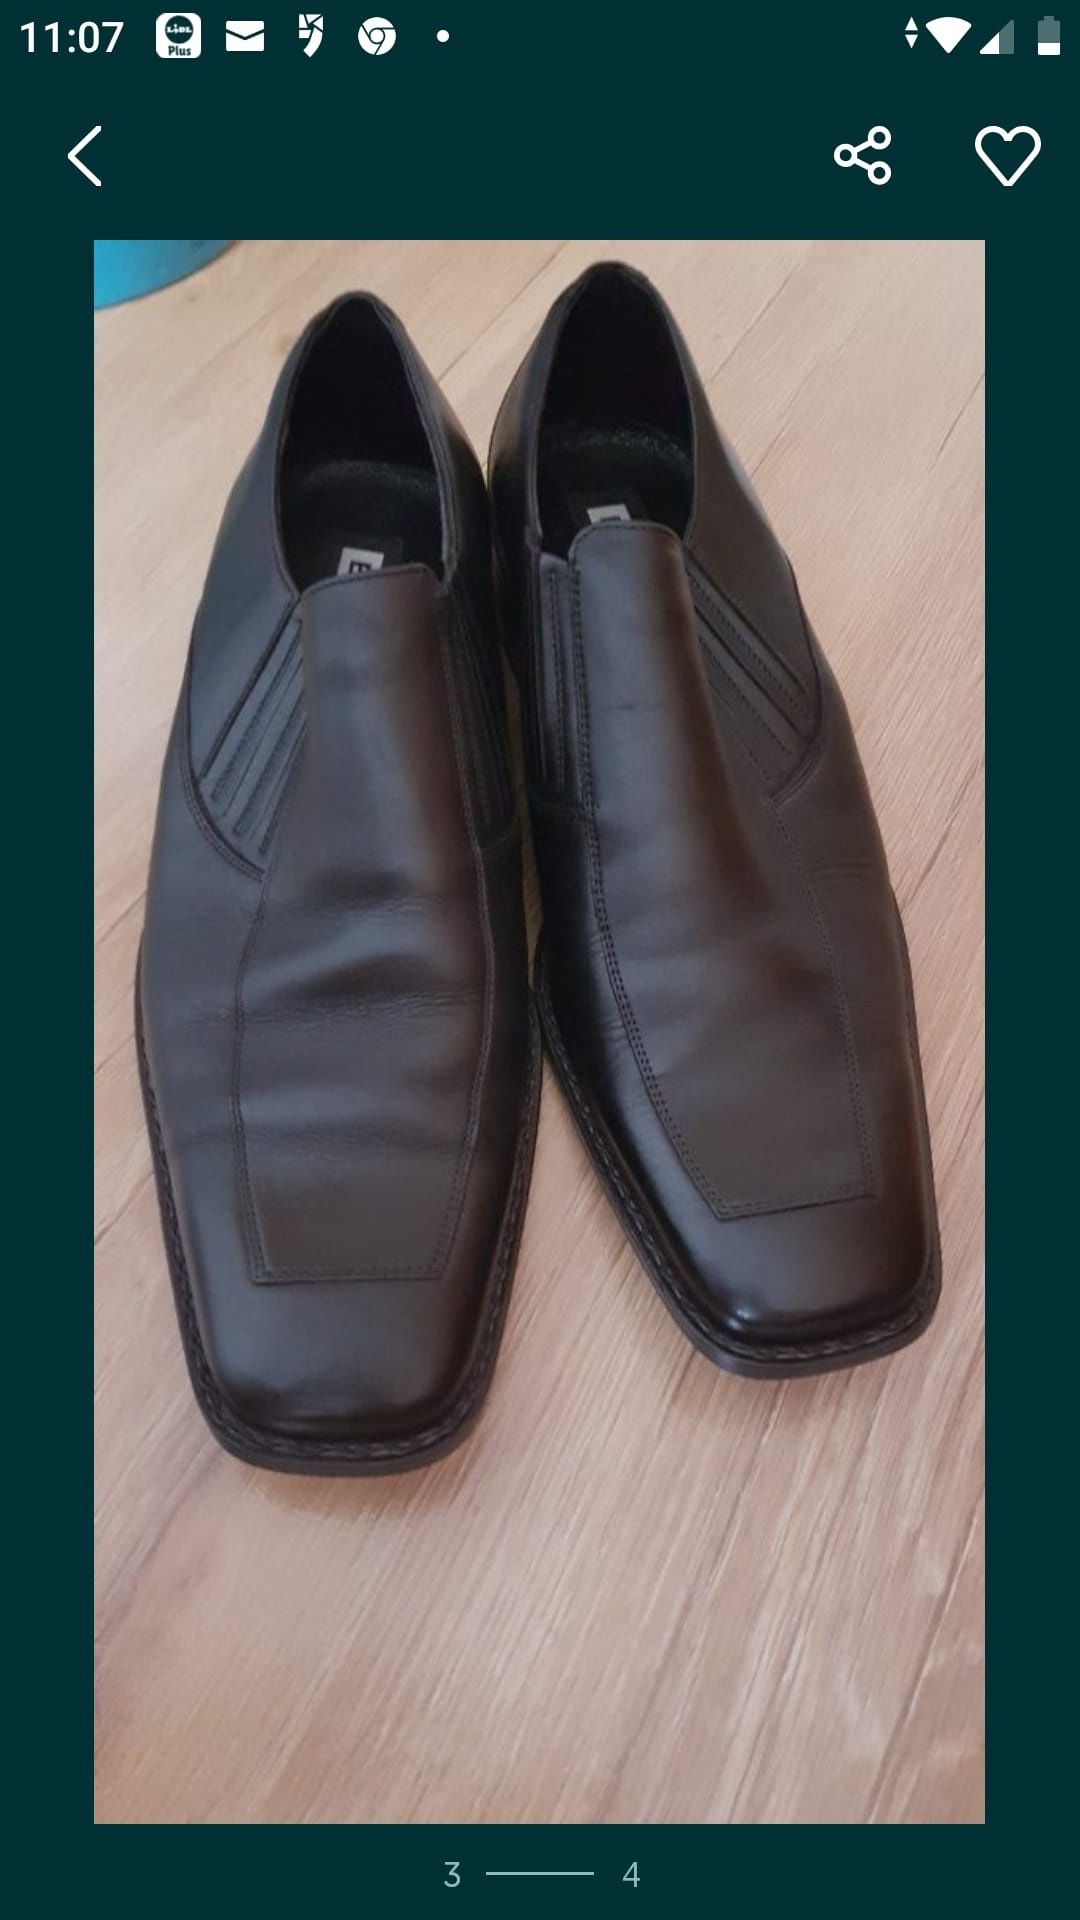 Buty półbuty męskie czarne r 43 eleganckie wsuwane